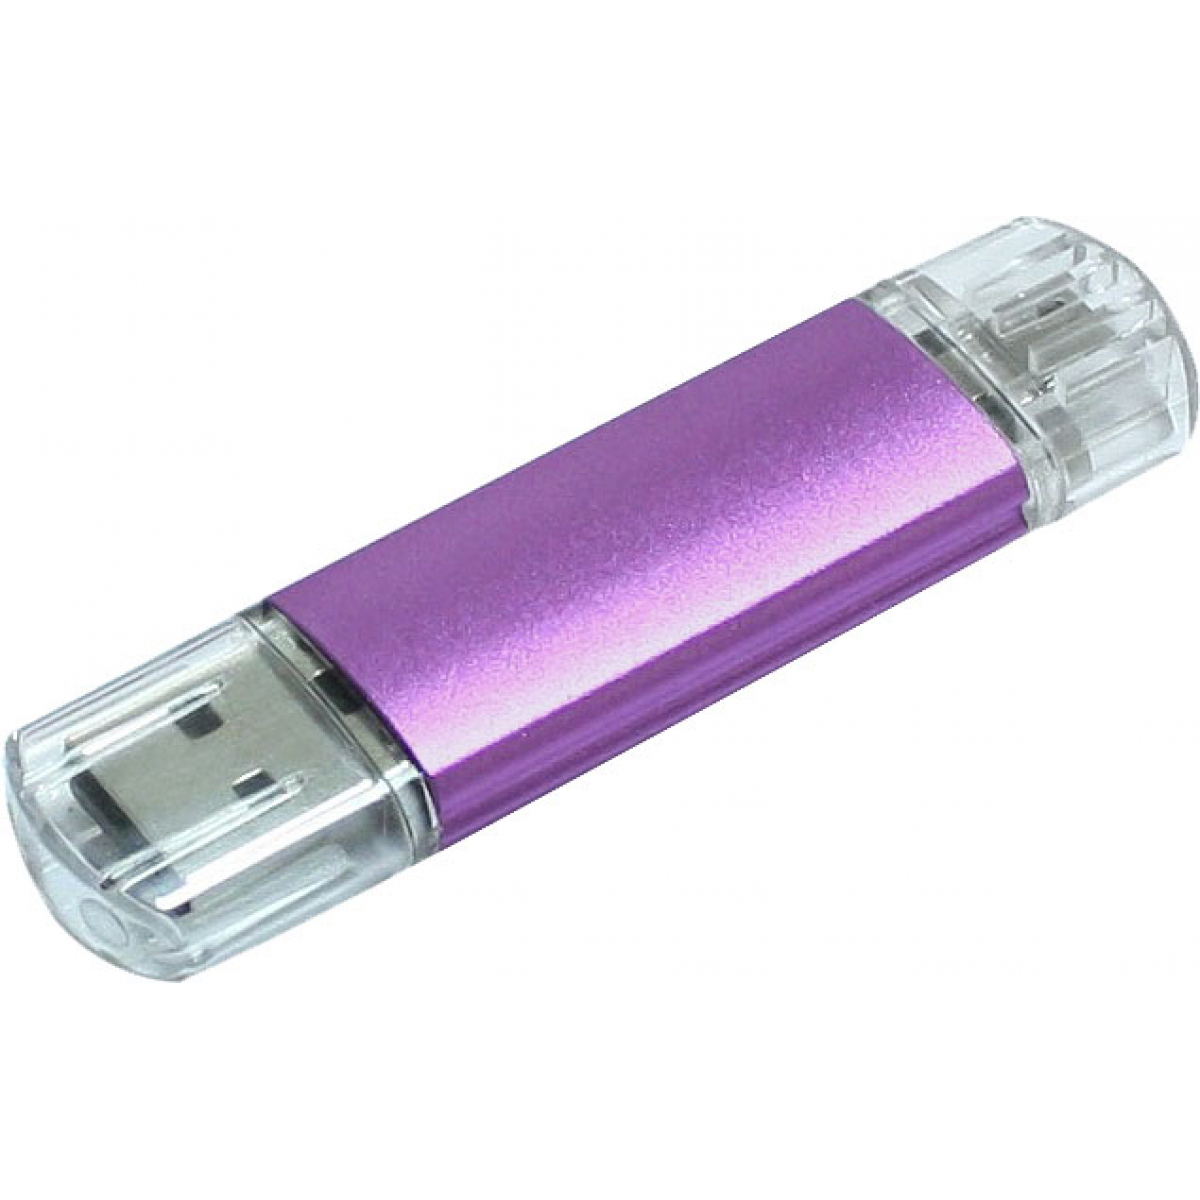 USB | 4 GB | Aluminium | Micro USB